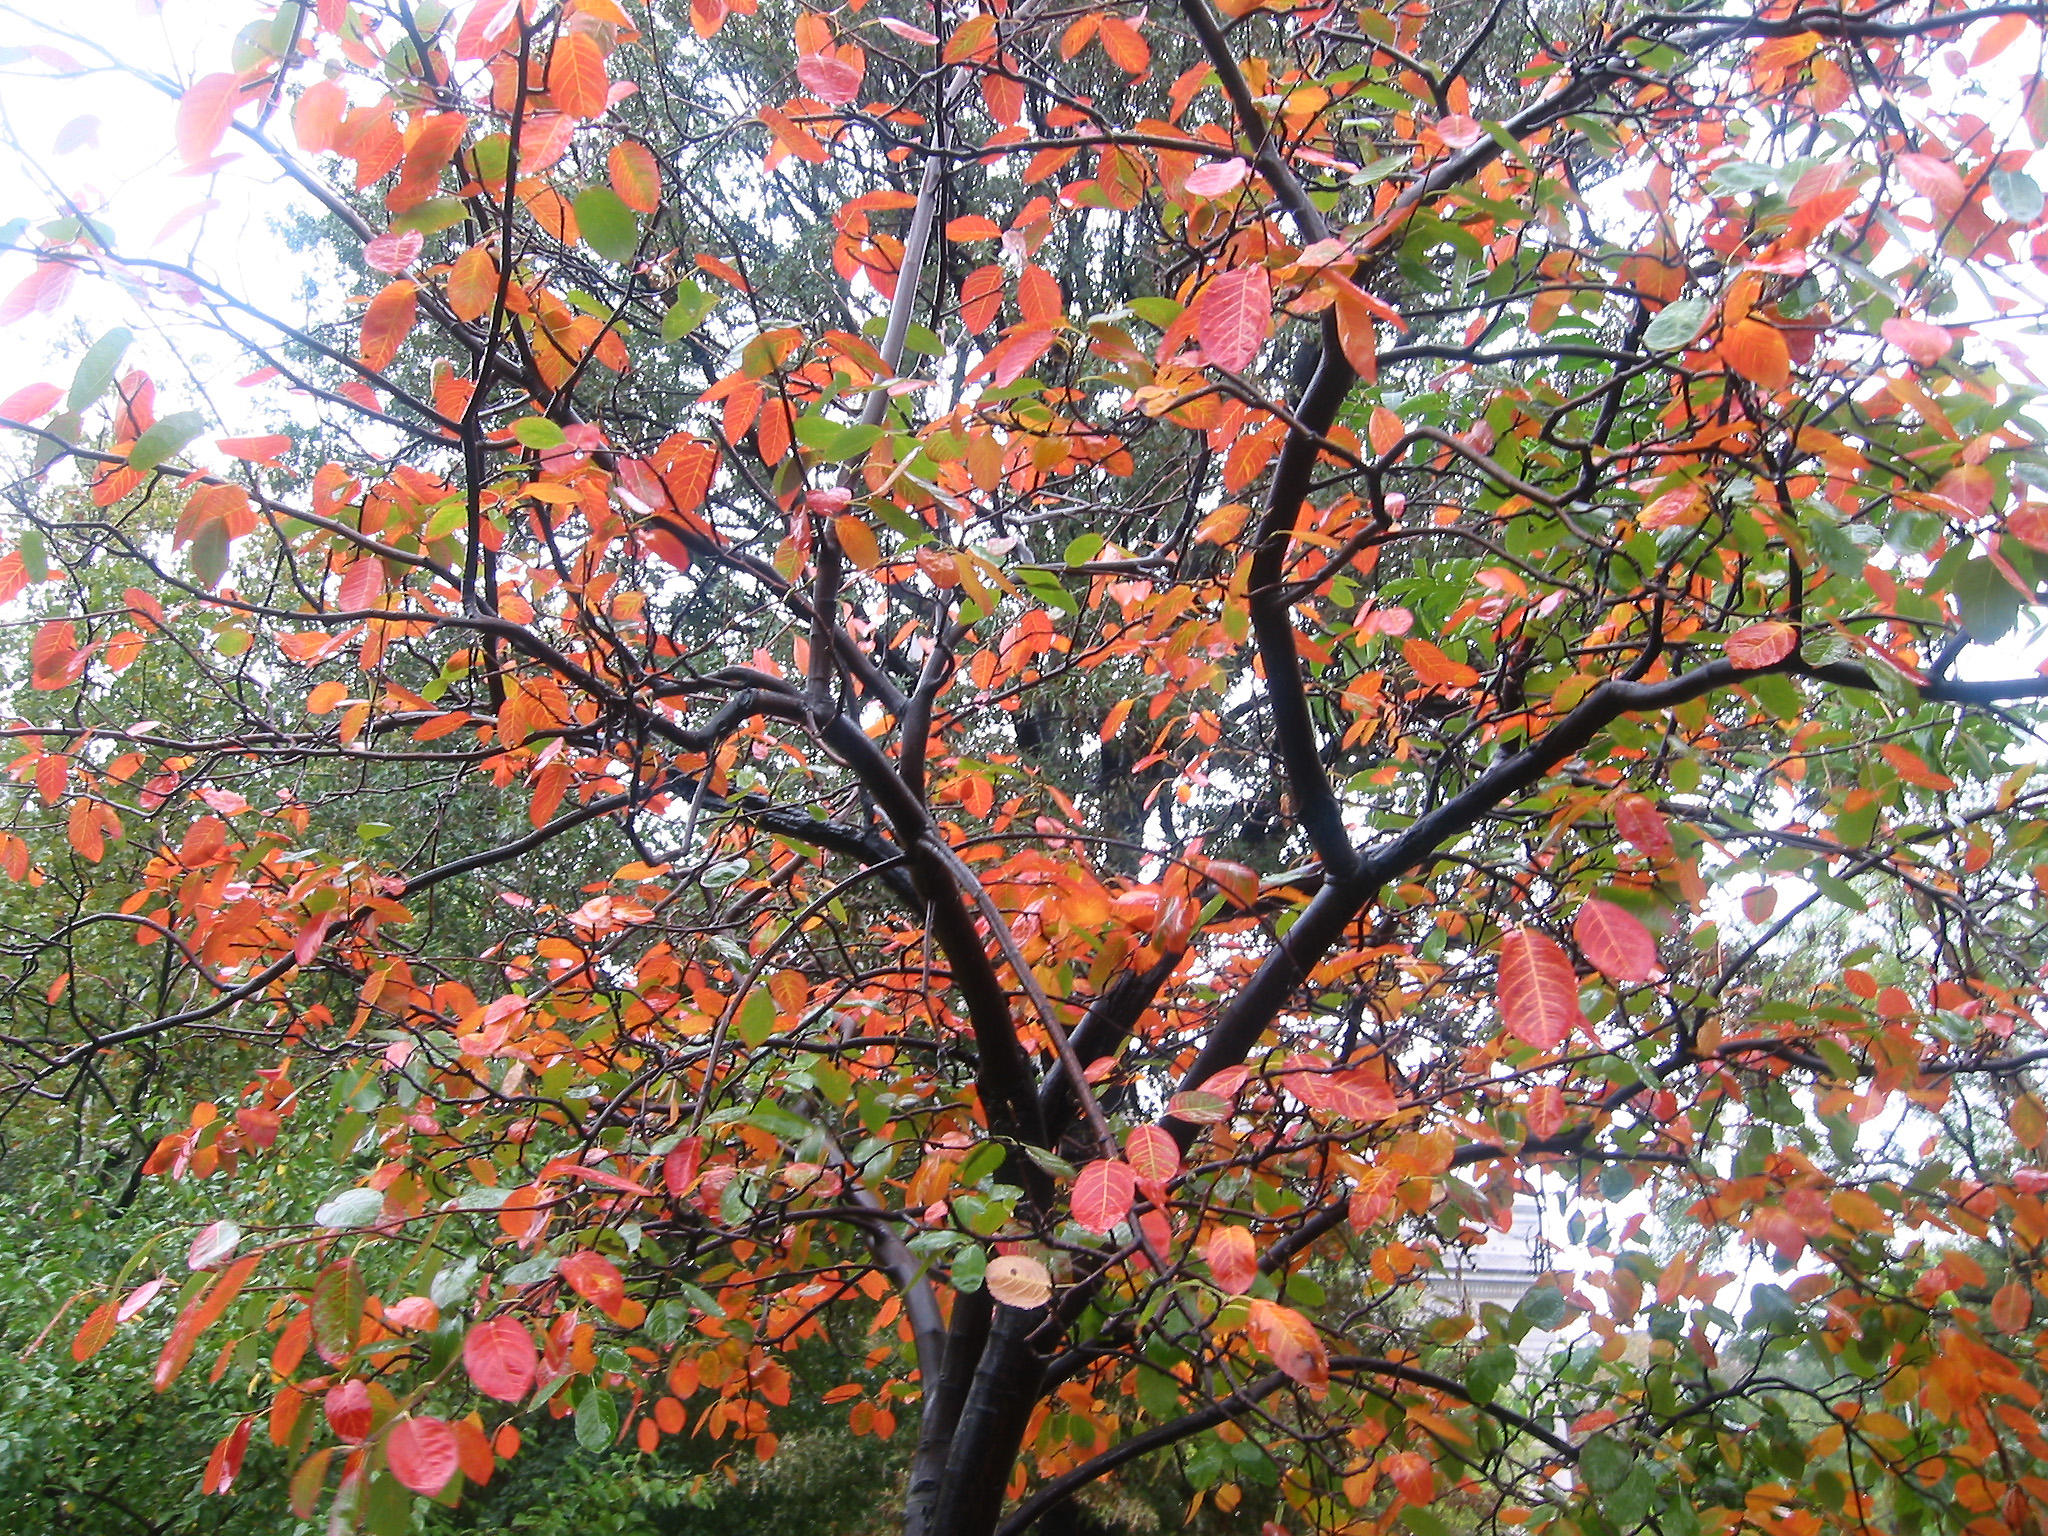 Rainy Day - Prunus Tree Foliage